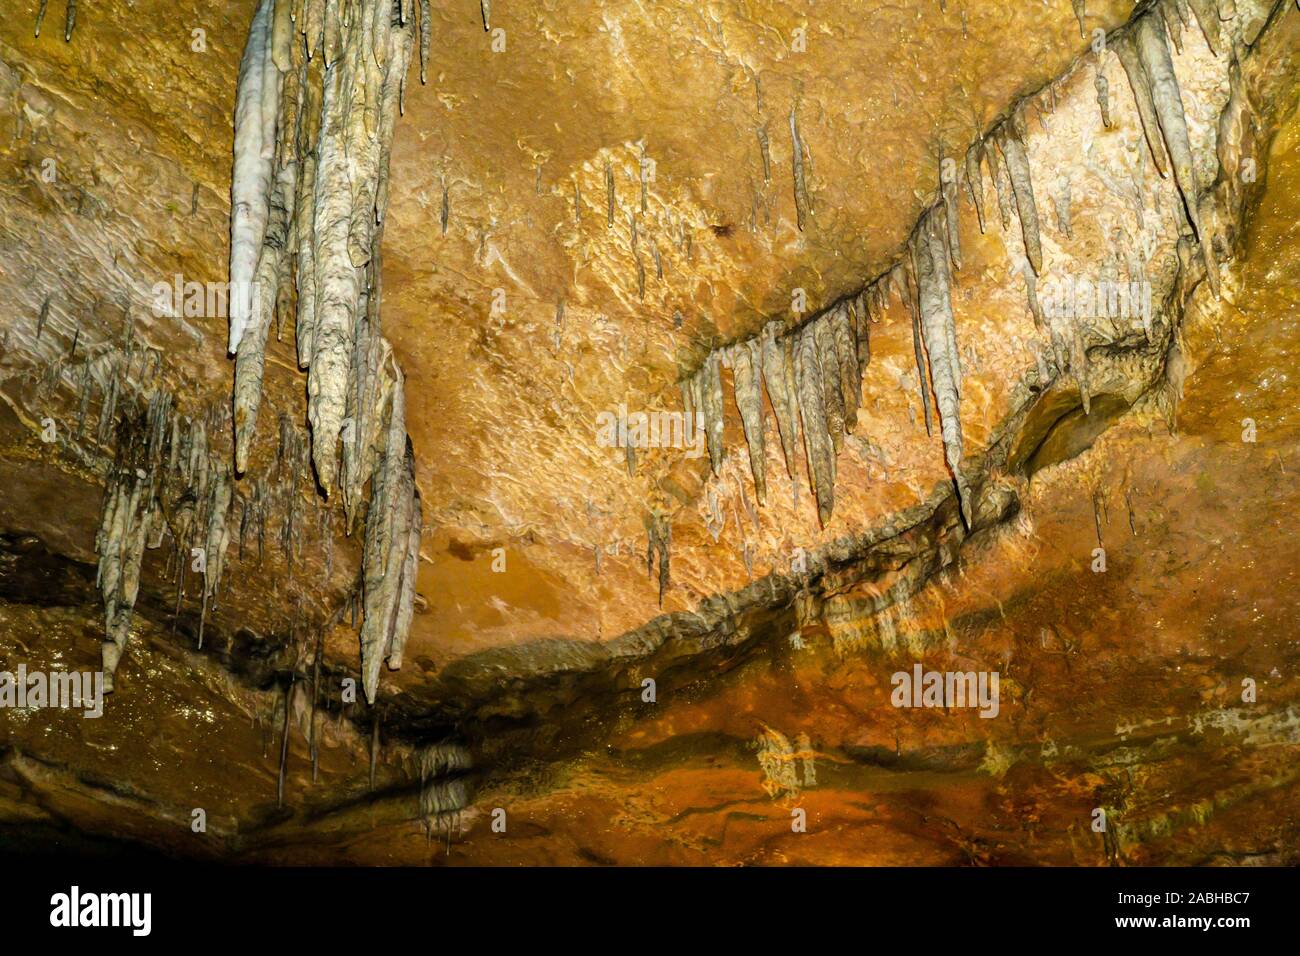 Illuminated Cave with stalactites background Stock Photo